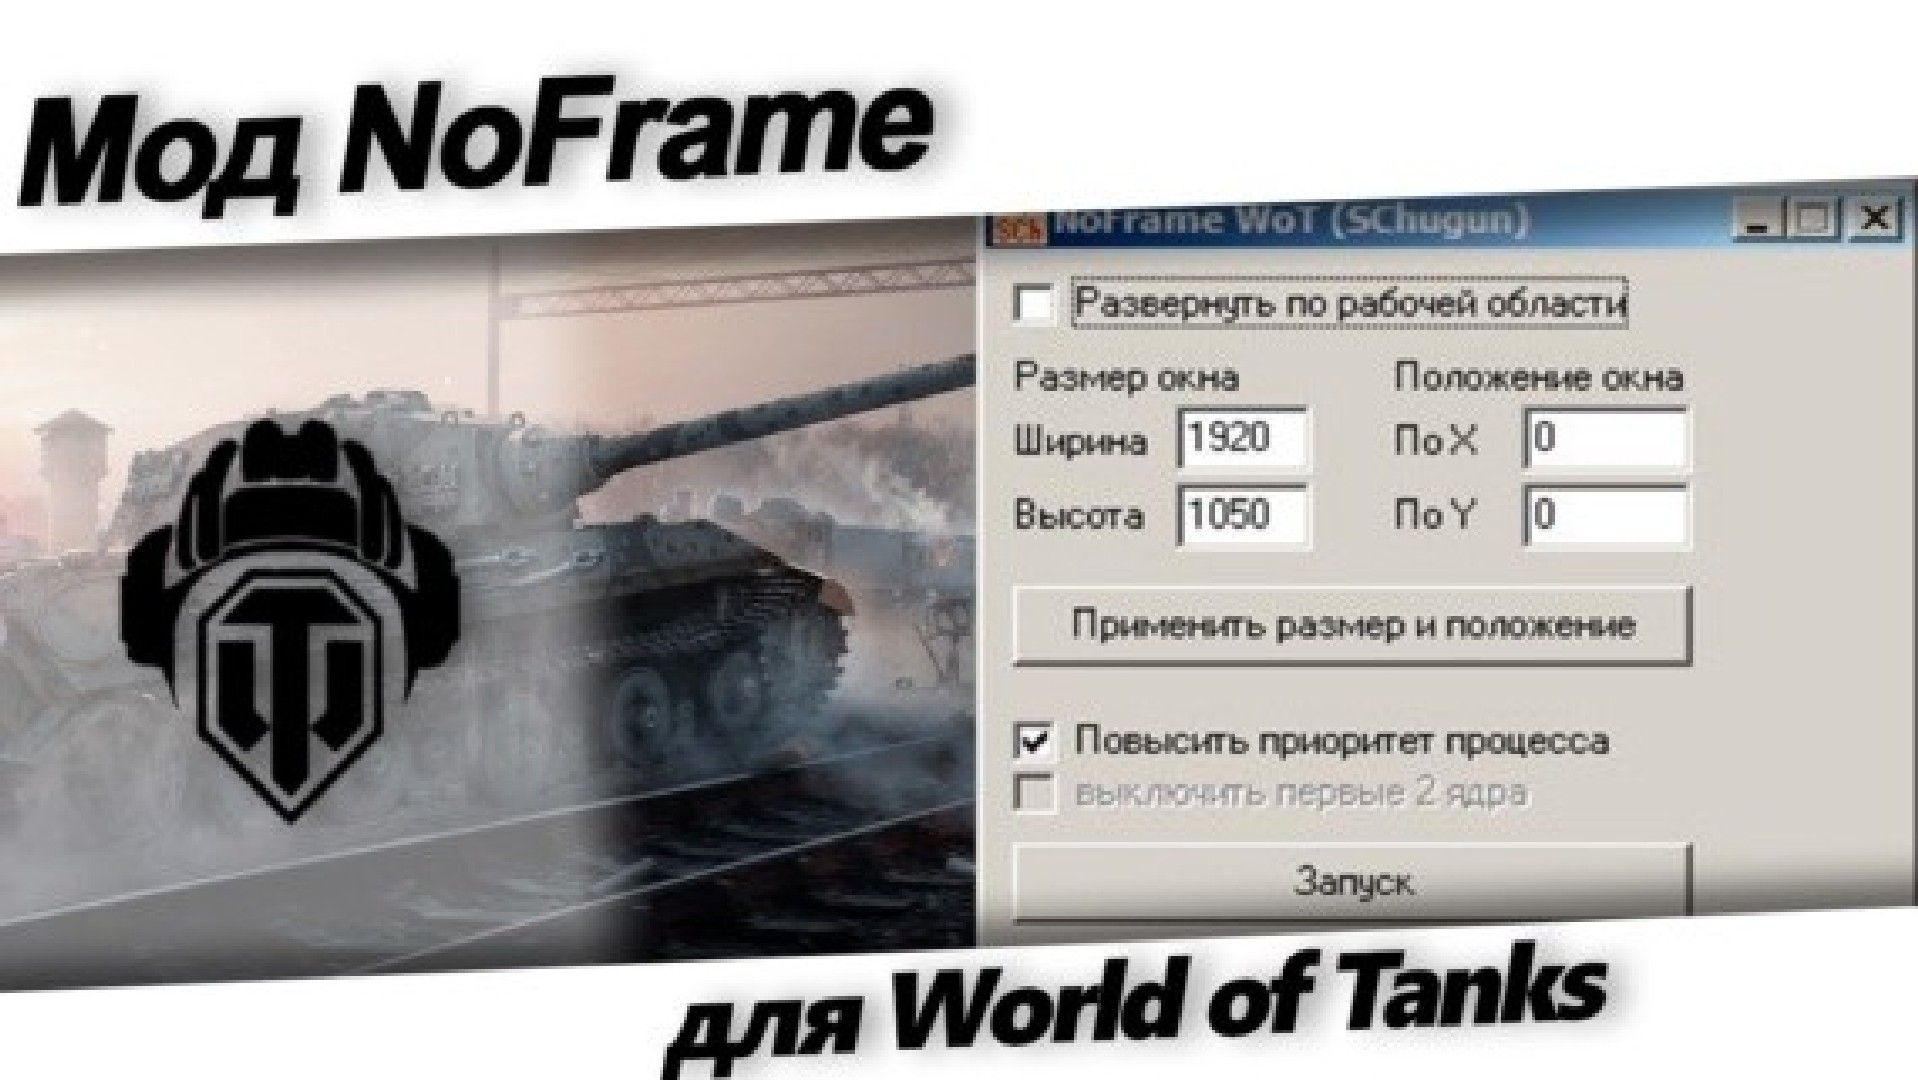 World of tanks eu коды. Оконный режим без рамки в играх. Генератор кодов для World of Tanks. Мод «рентген» для World of Tanks 1.20.0.1. Танки запускаются в оконном режиме.